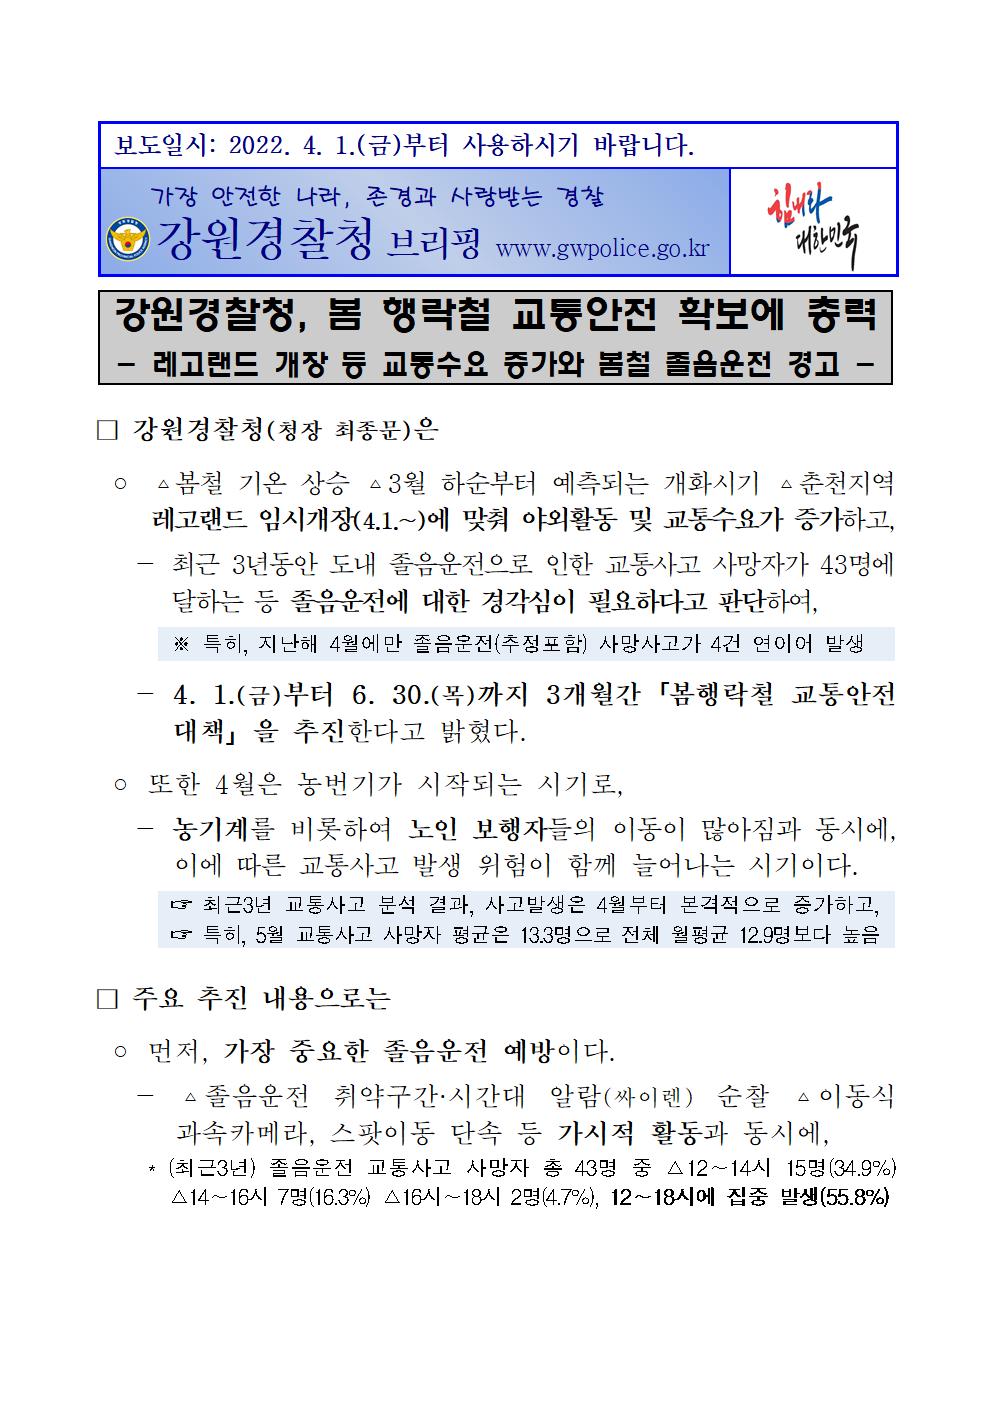 강원경찰청, 봄 행락철 교통안전 확보에 총력-보도자료1